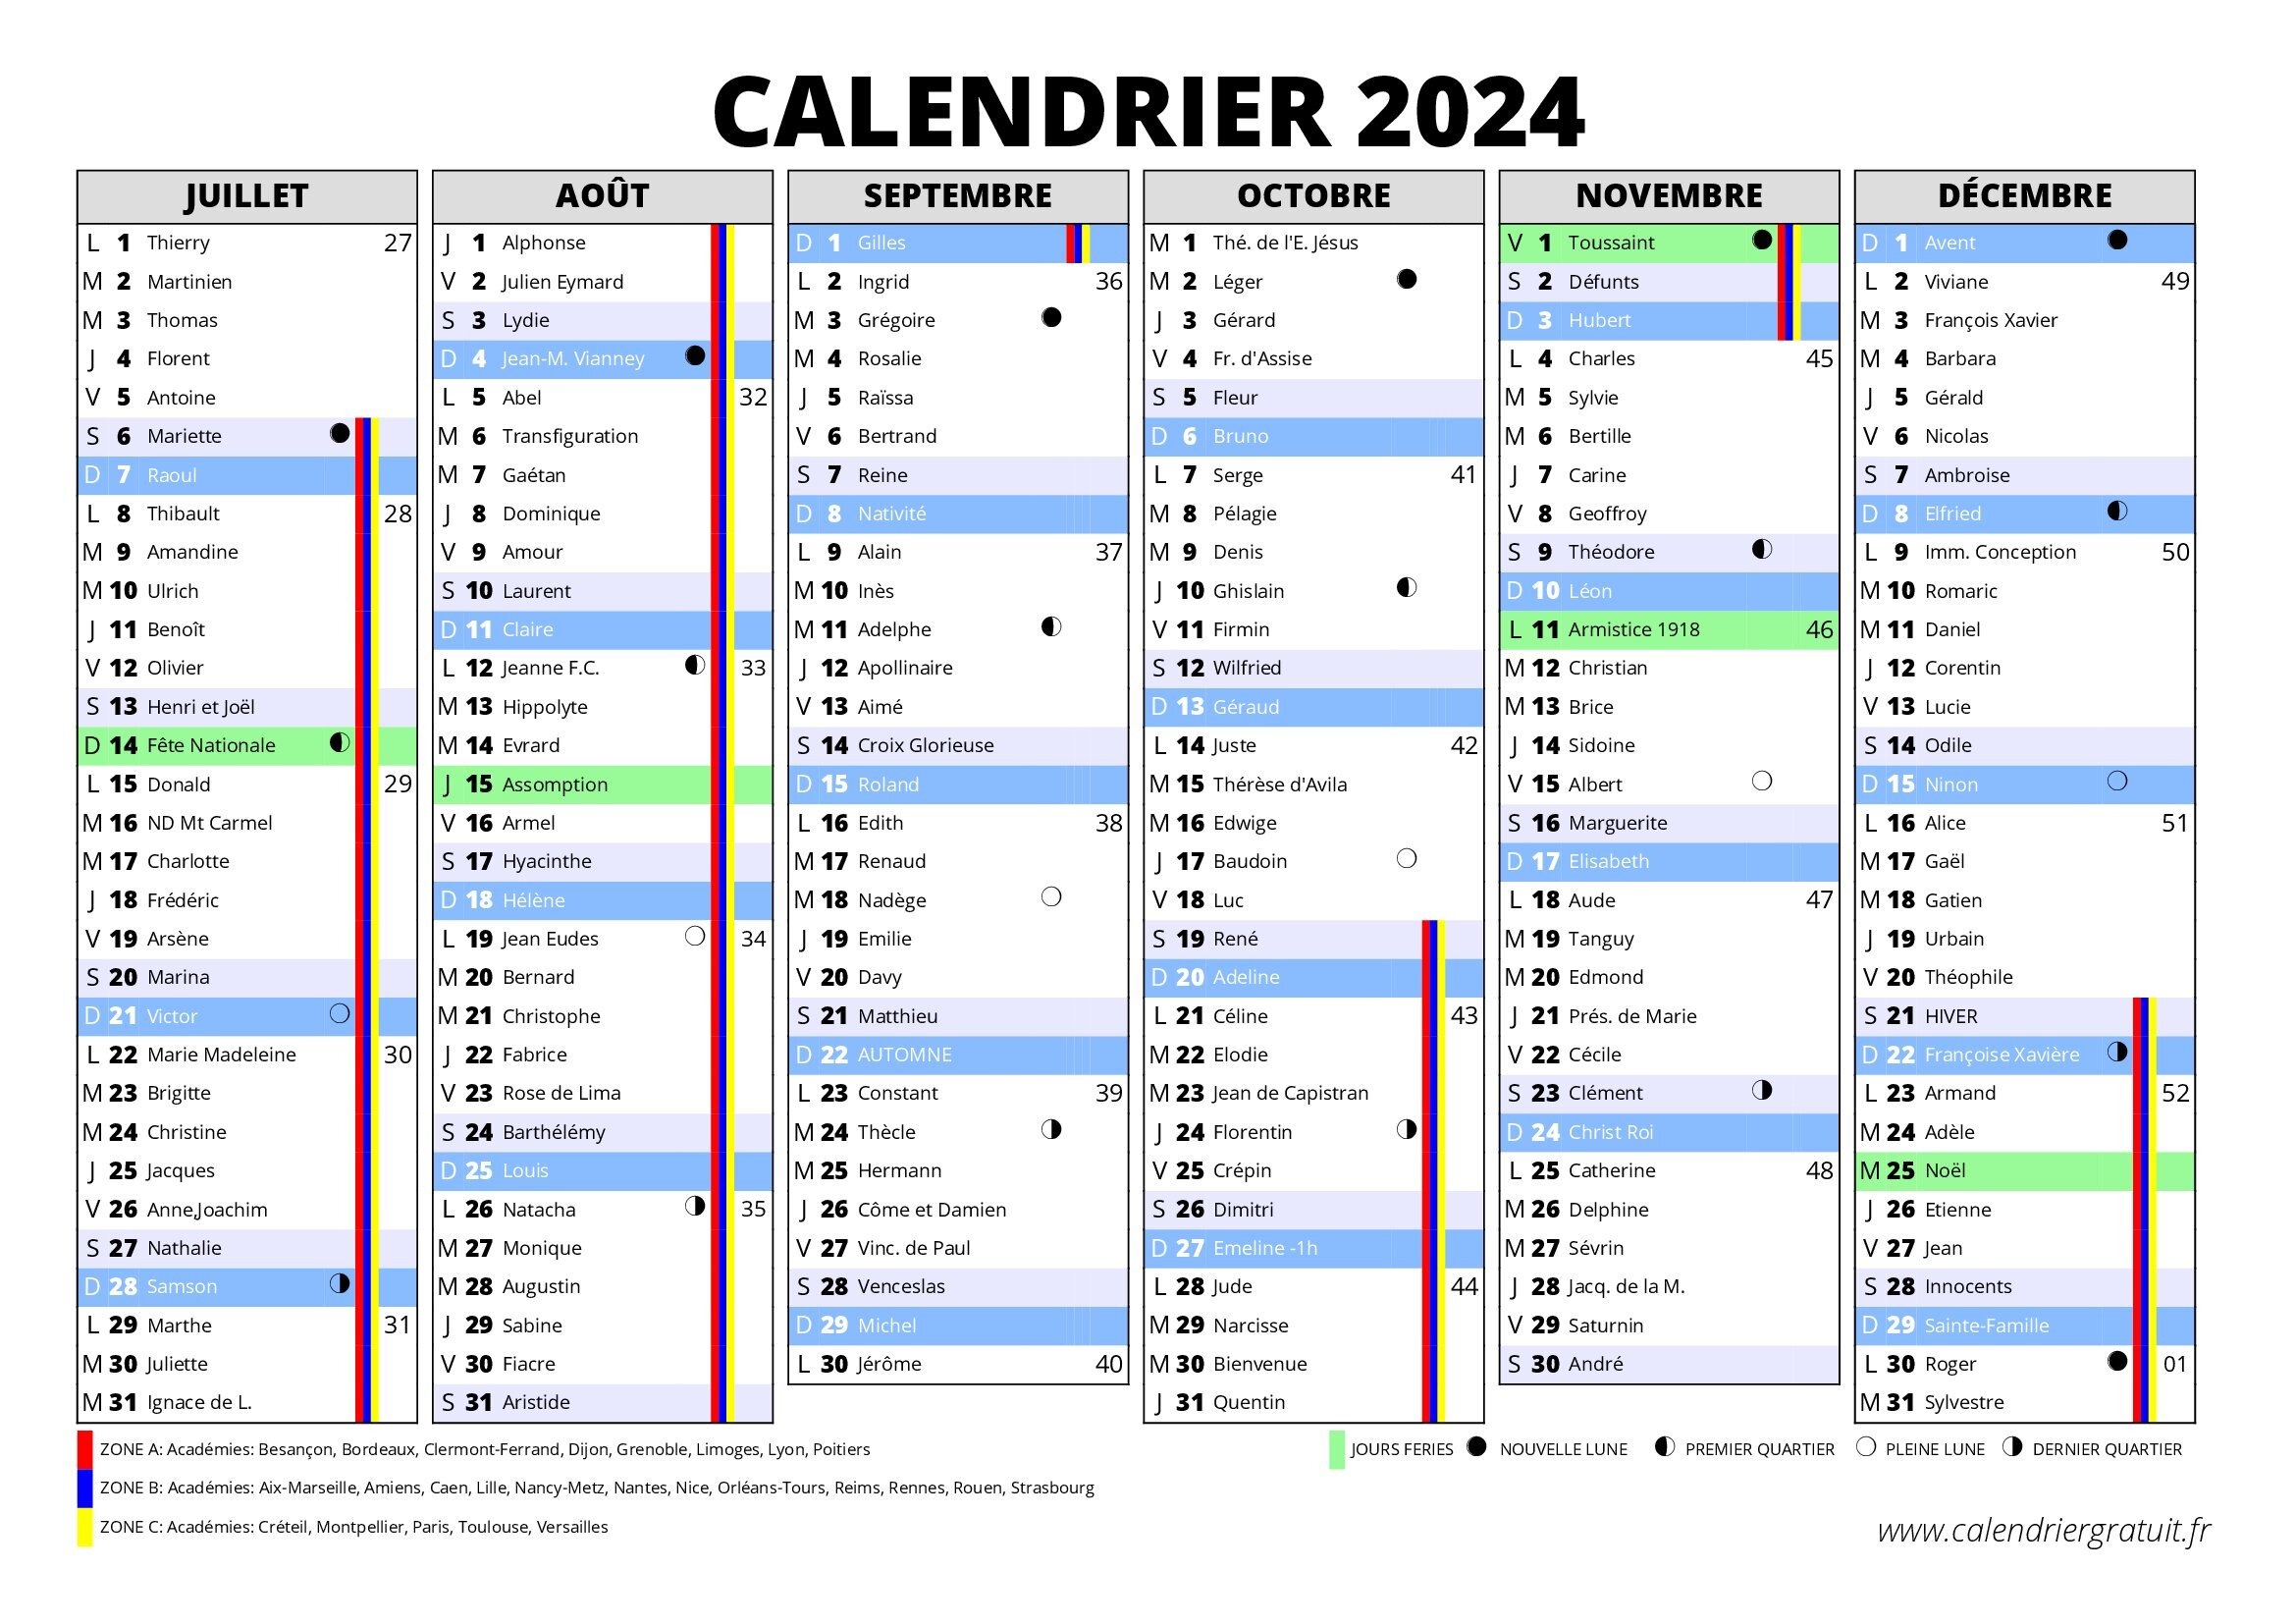 Calendrier 2024 - Zone 6